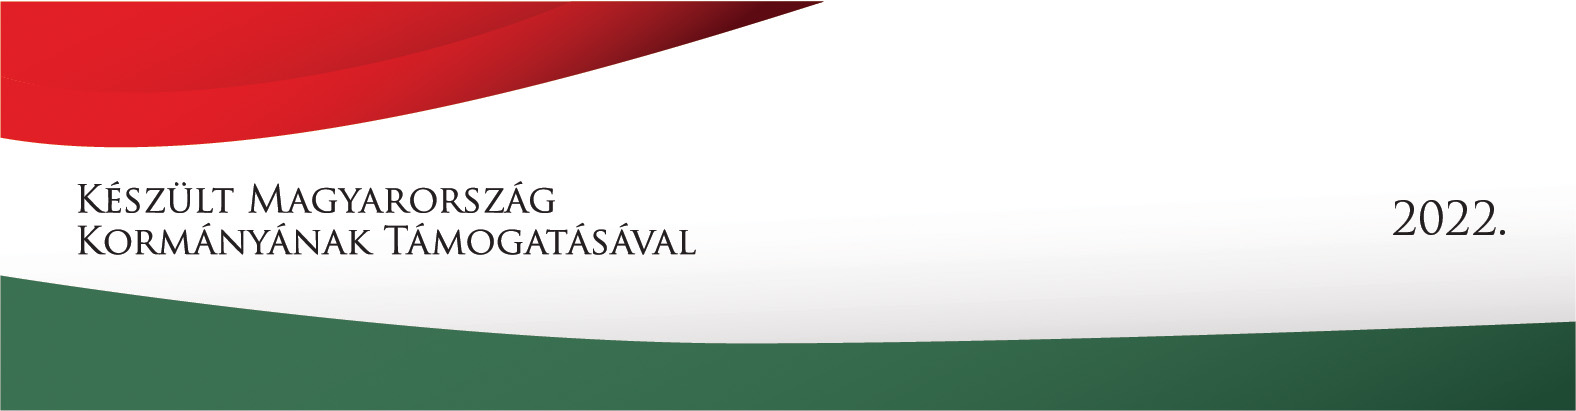 Készült Magyarország Kormányának támogatásával, 2022